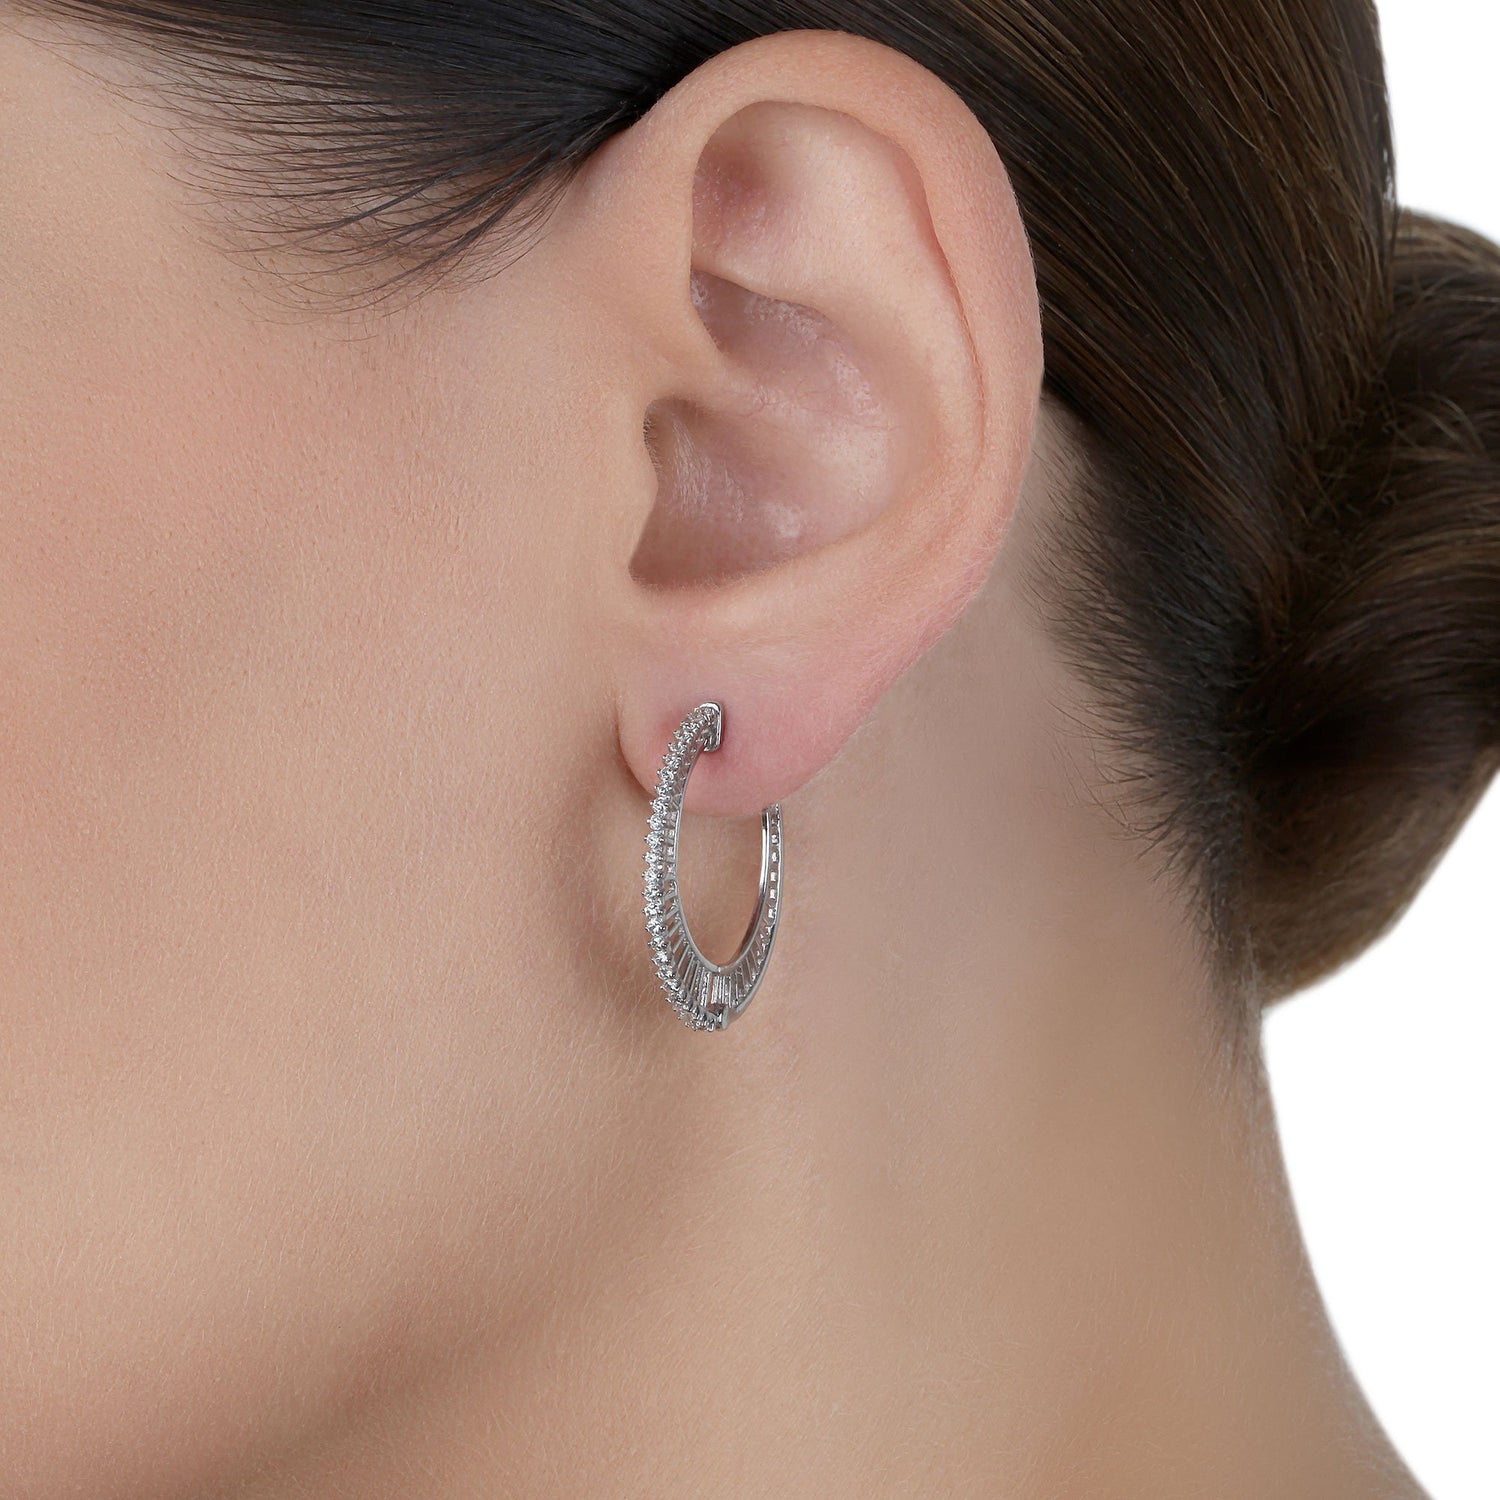  Small Hoop Diamond Earrings  | Jewelry online 